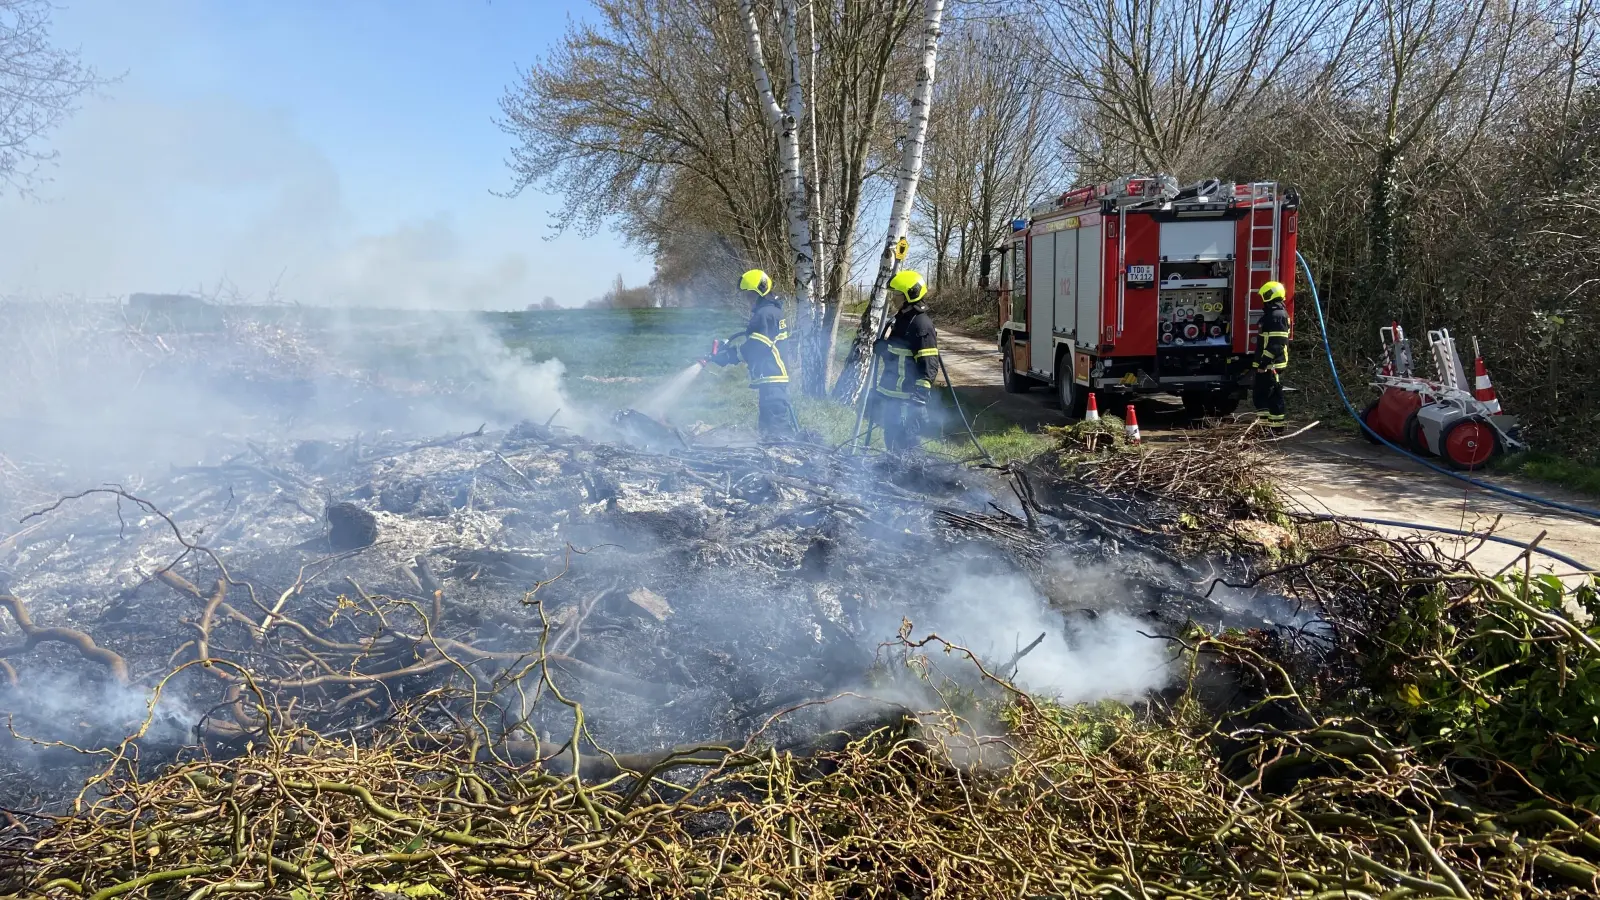 Grünschnitt brennt in Sehlis - Feuerwehr löscht (Foto: taucha-kompakt.de)